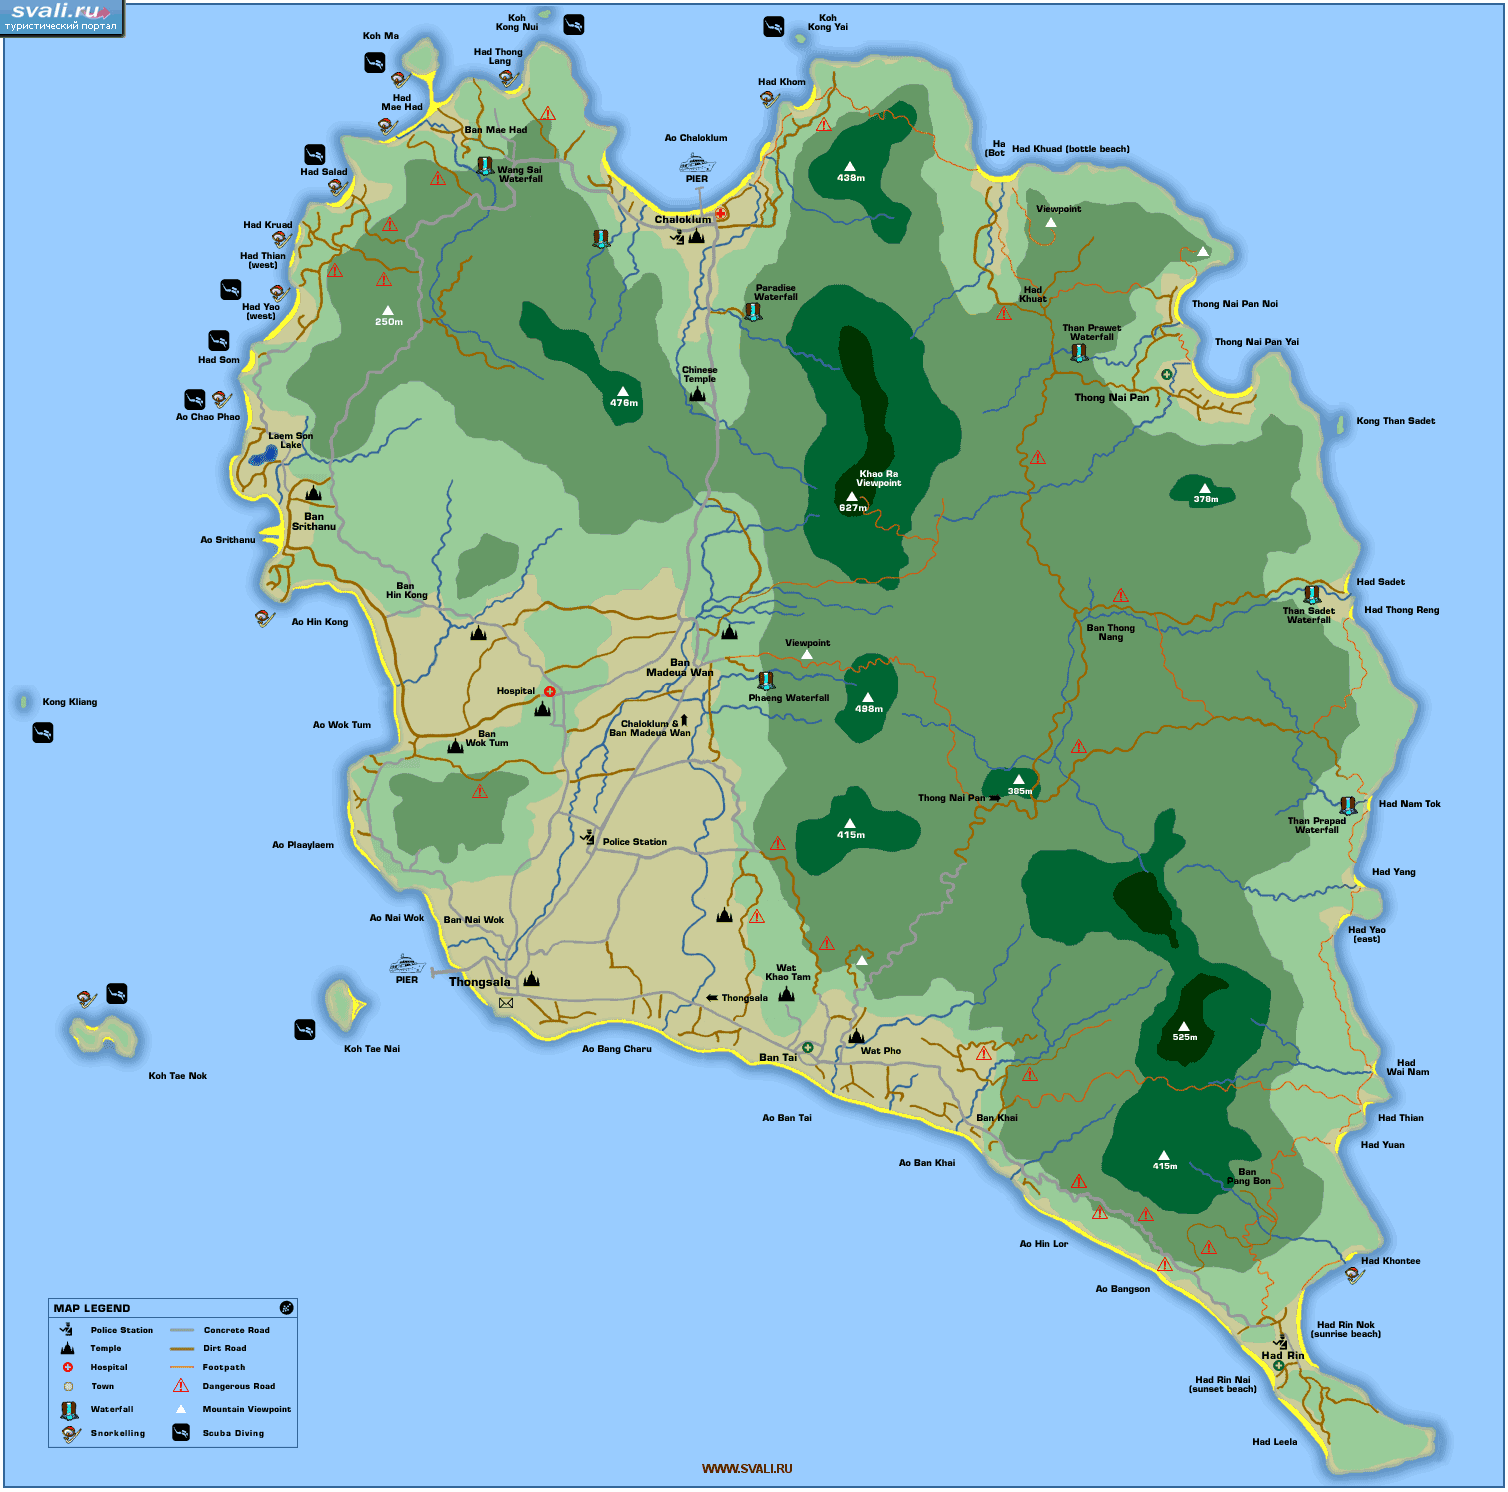 Карта острова Фанган (Koh Phangan) с местами погружений, юг Тайланд (англ.)